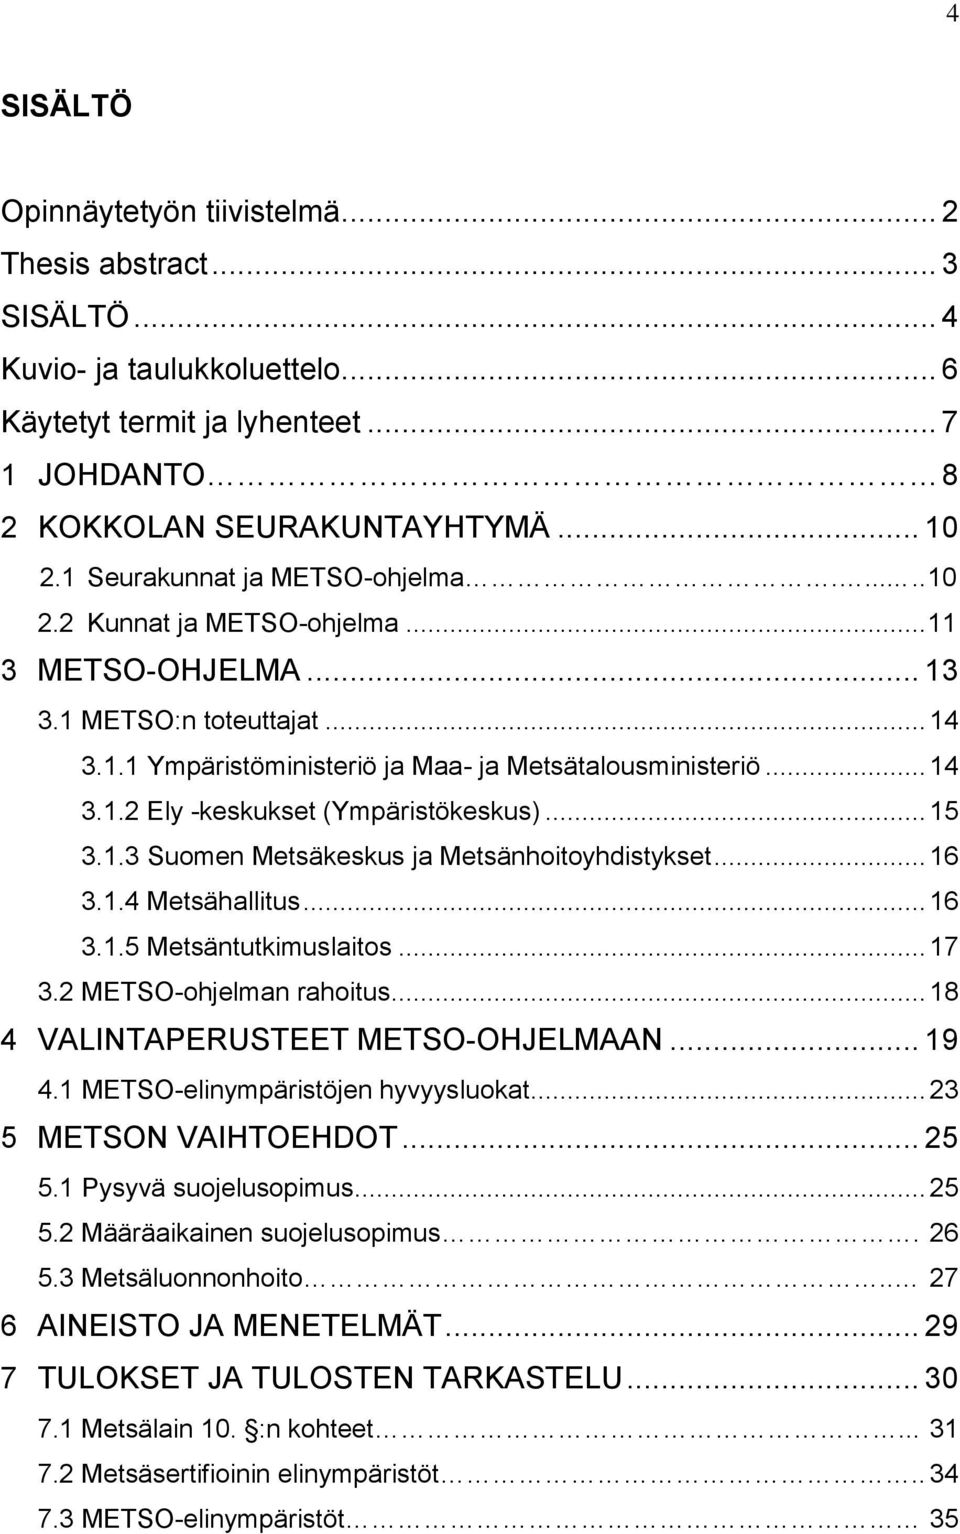 .. 15 3.1.3 Suomen Metsäkeskus ja Metsänhoitoyhdistykset... 16 3.1.4 Metsähallitus... 16 3.1.5 Metsäntutkimuslaitos... 17 3.2 METSO-ohjelman rahoitus... 18 4 VALINTAPERUSTEET METSO-OHJELMAAN... 19 4.